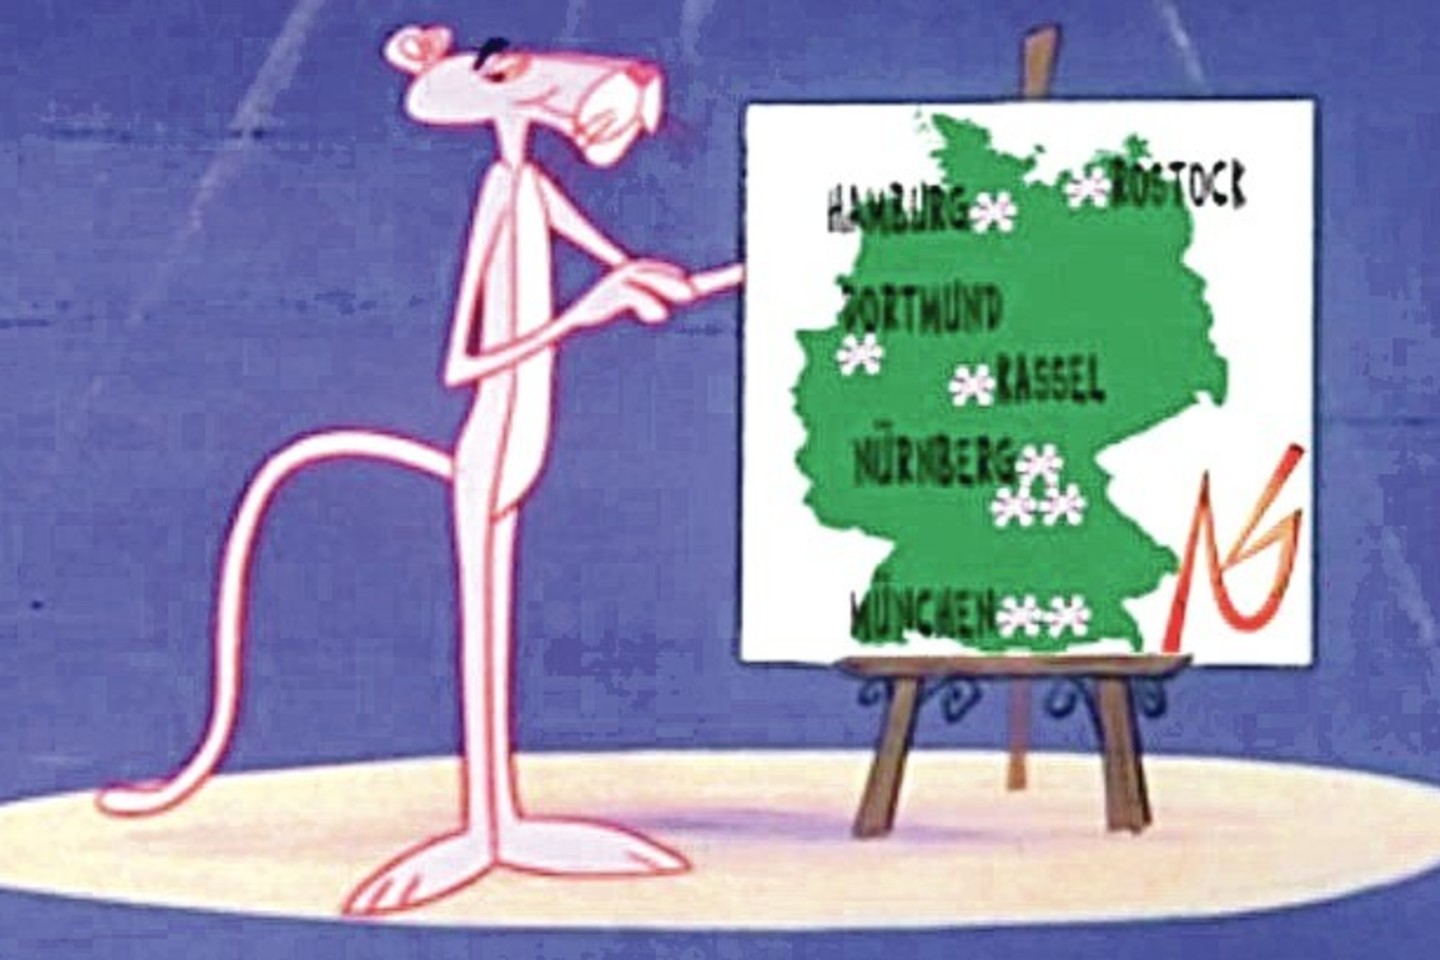 Judėjimas animaciniame filme prisipažino Vokietijoje vykdęs žmogžudystes.